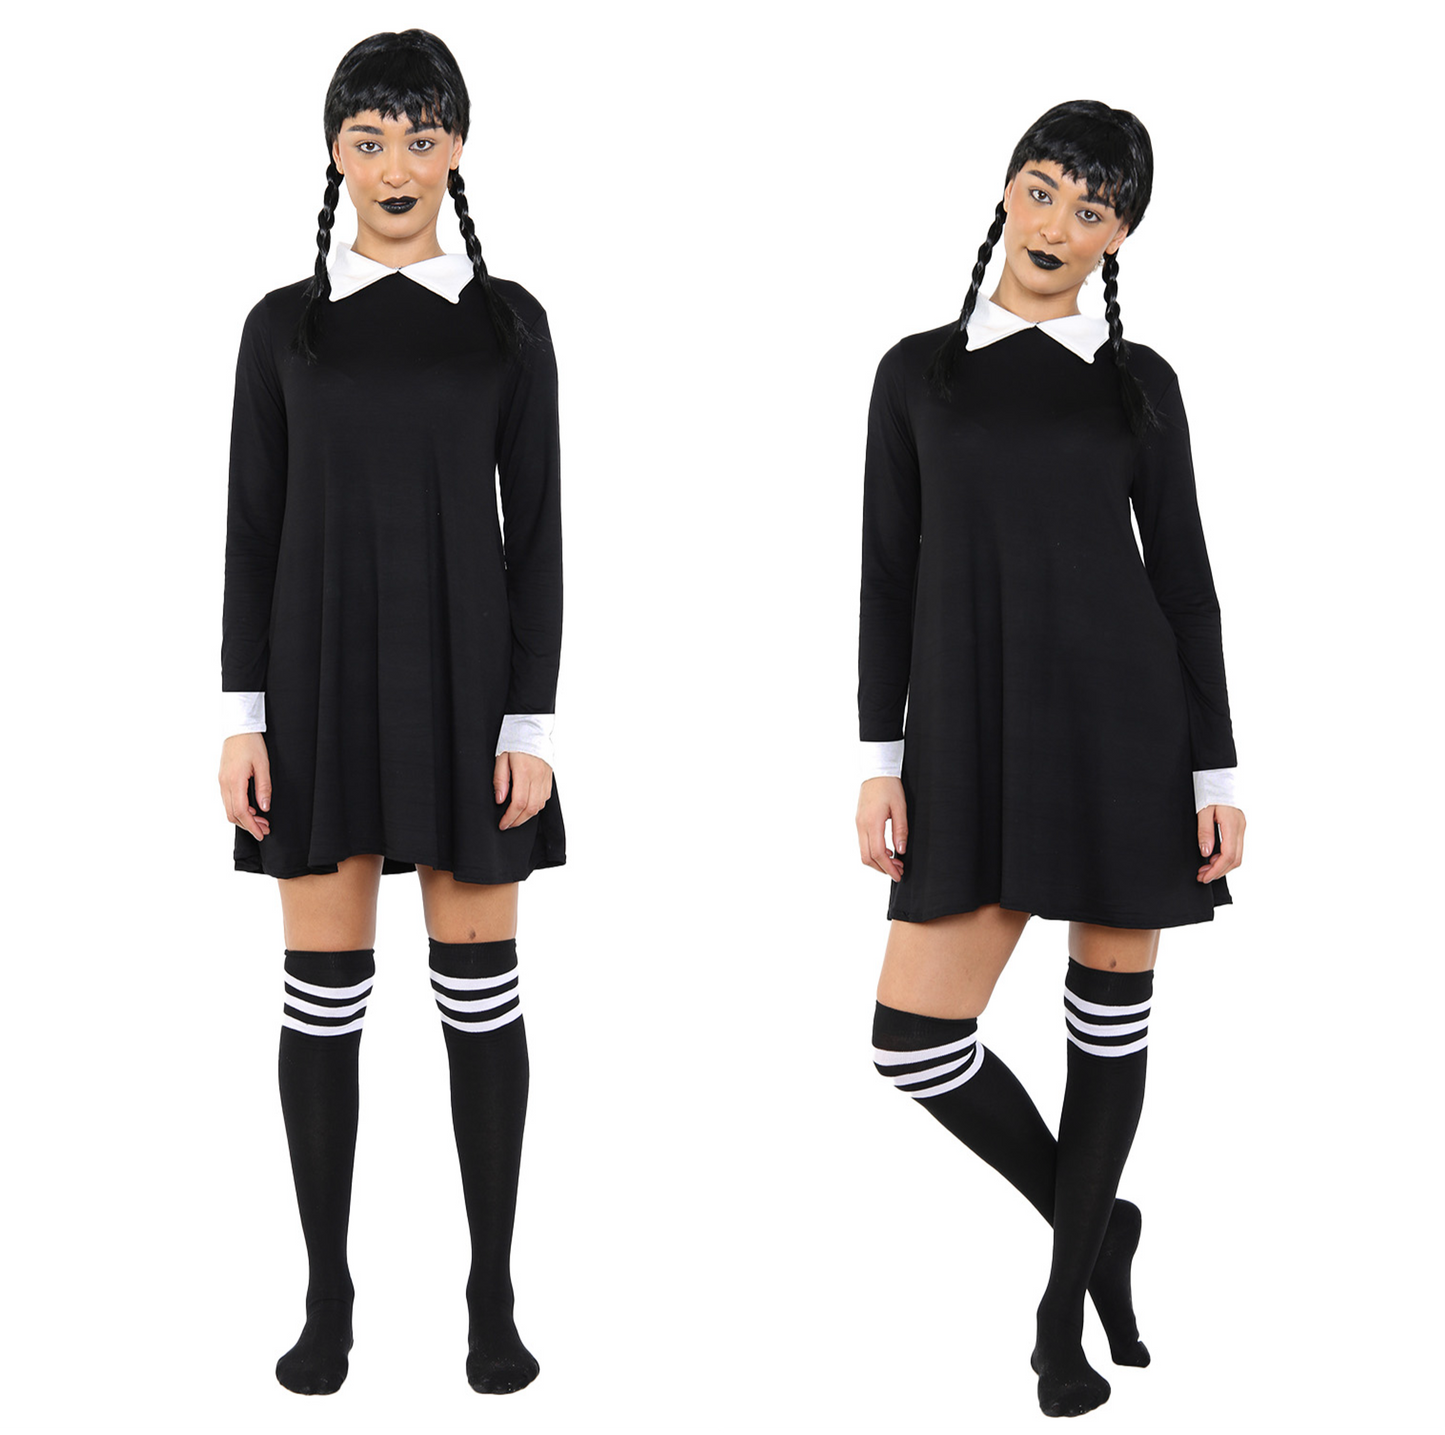 Wednesday Addams 3-Piece Costume